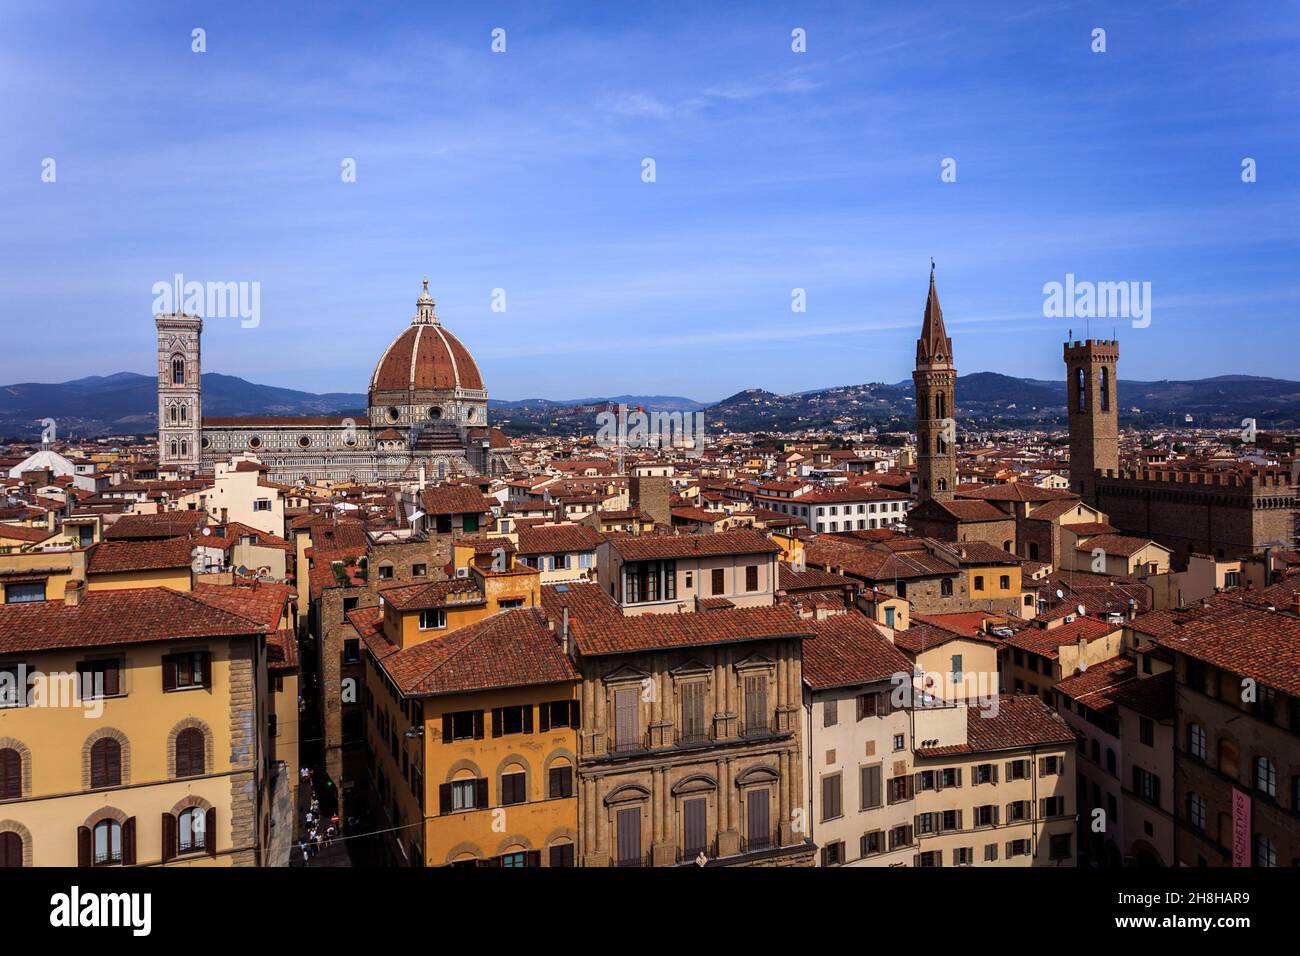 La catedral del Duomo, Santa Maria del Fiore y el museo Bargello de Florencia. Italia. La cúpula fue un gran logro de Brunelleschi en ese momento. Foto de stock